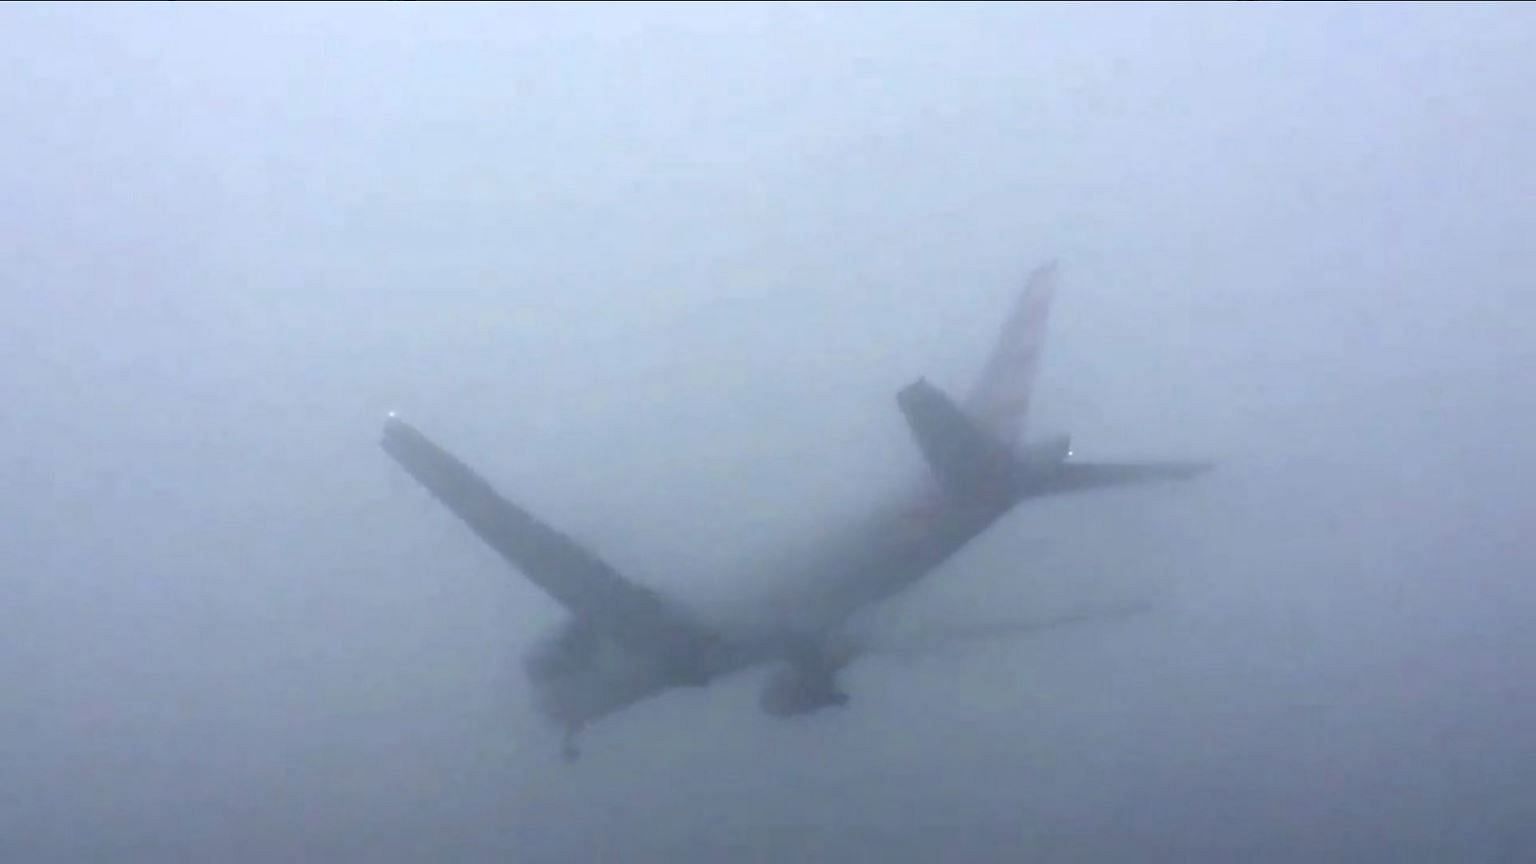 Flights were delayed due to the dense fog.